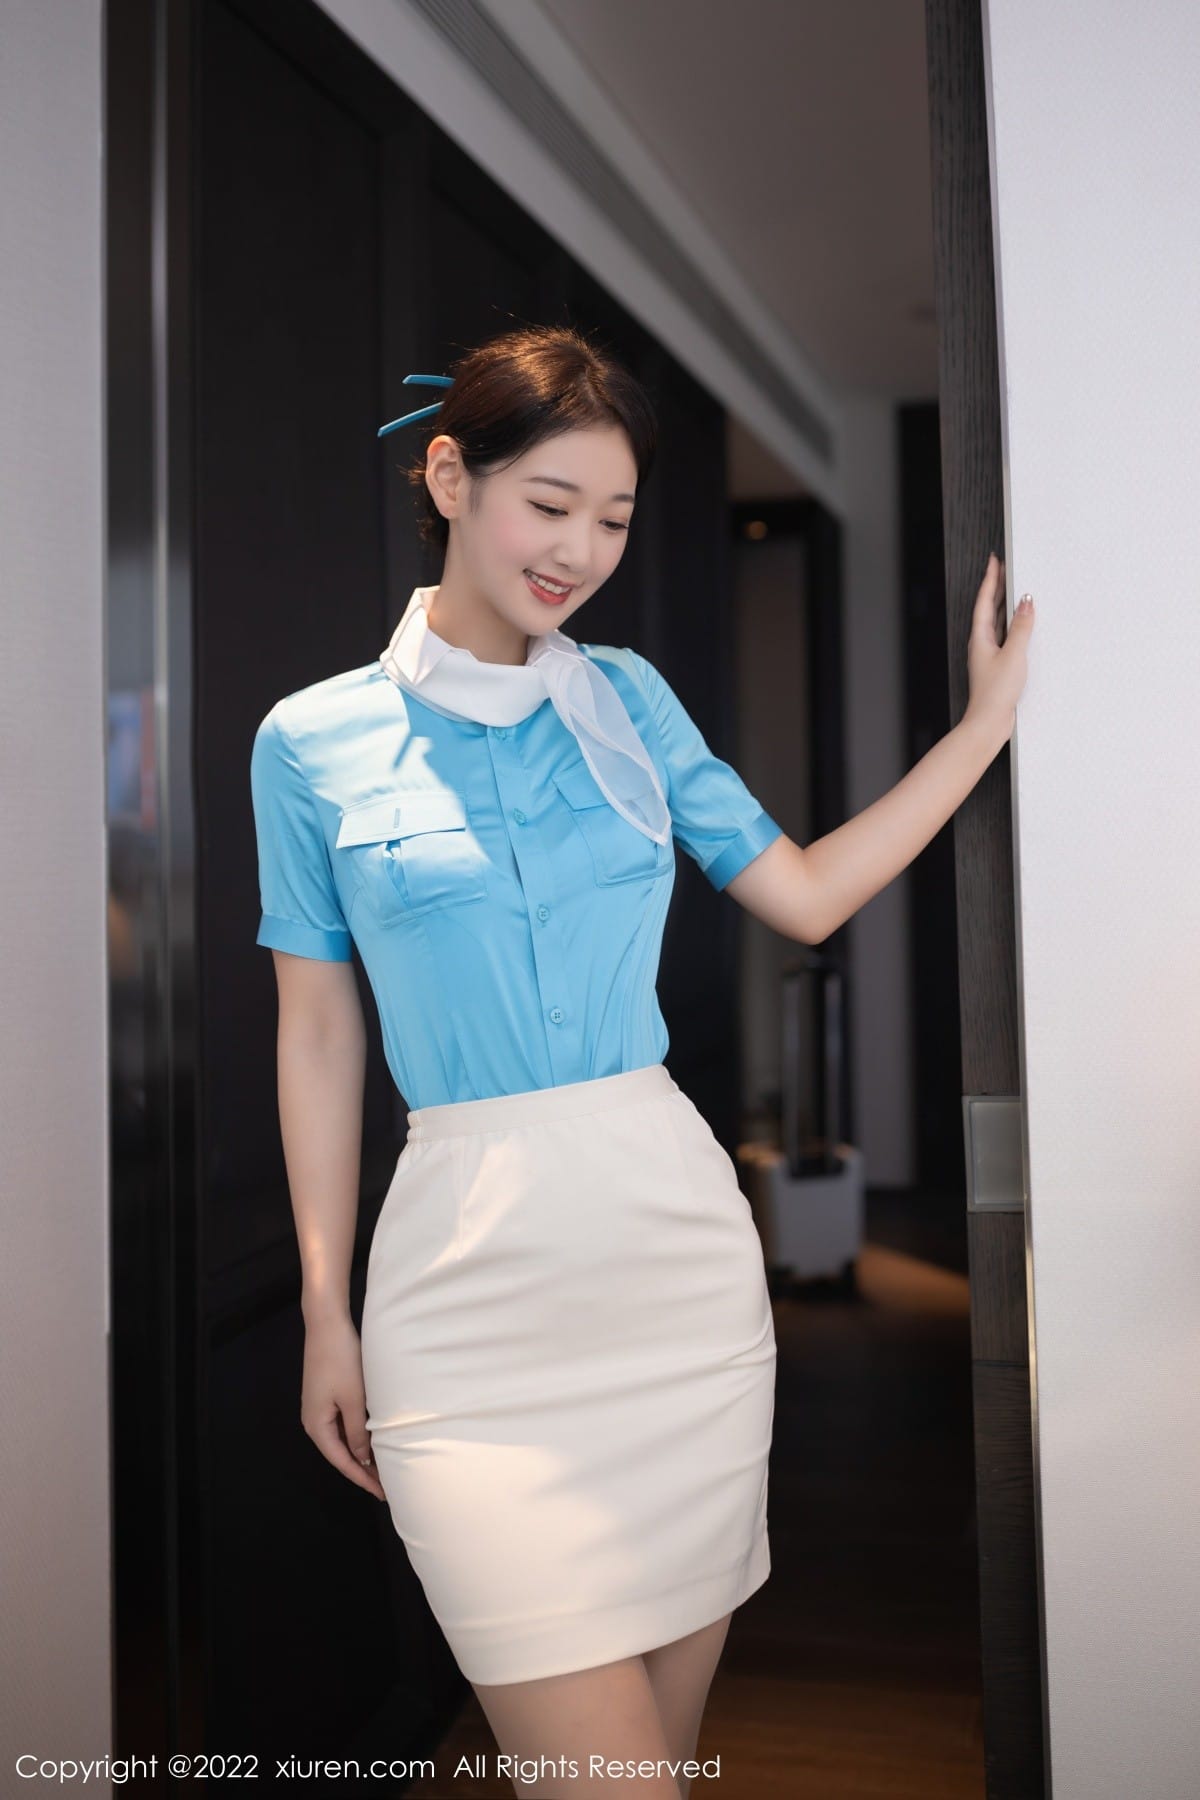 美女模特唐安琪天蓝色空姐制服搭配原色丝袜写真